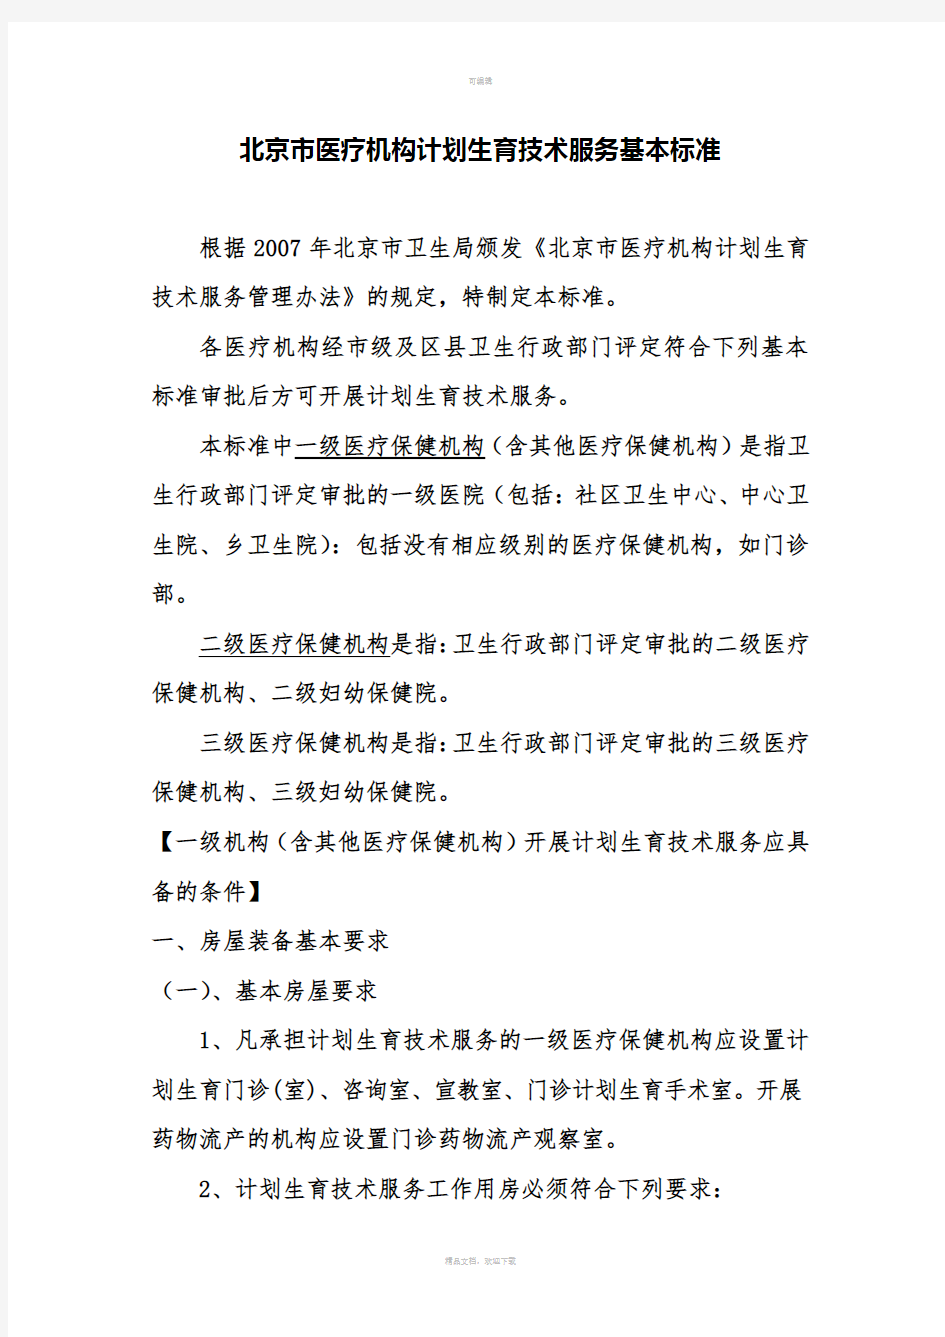 北京市医疗机构计划生育技术服务基本标准